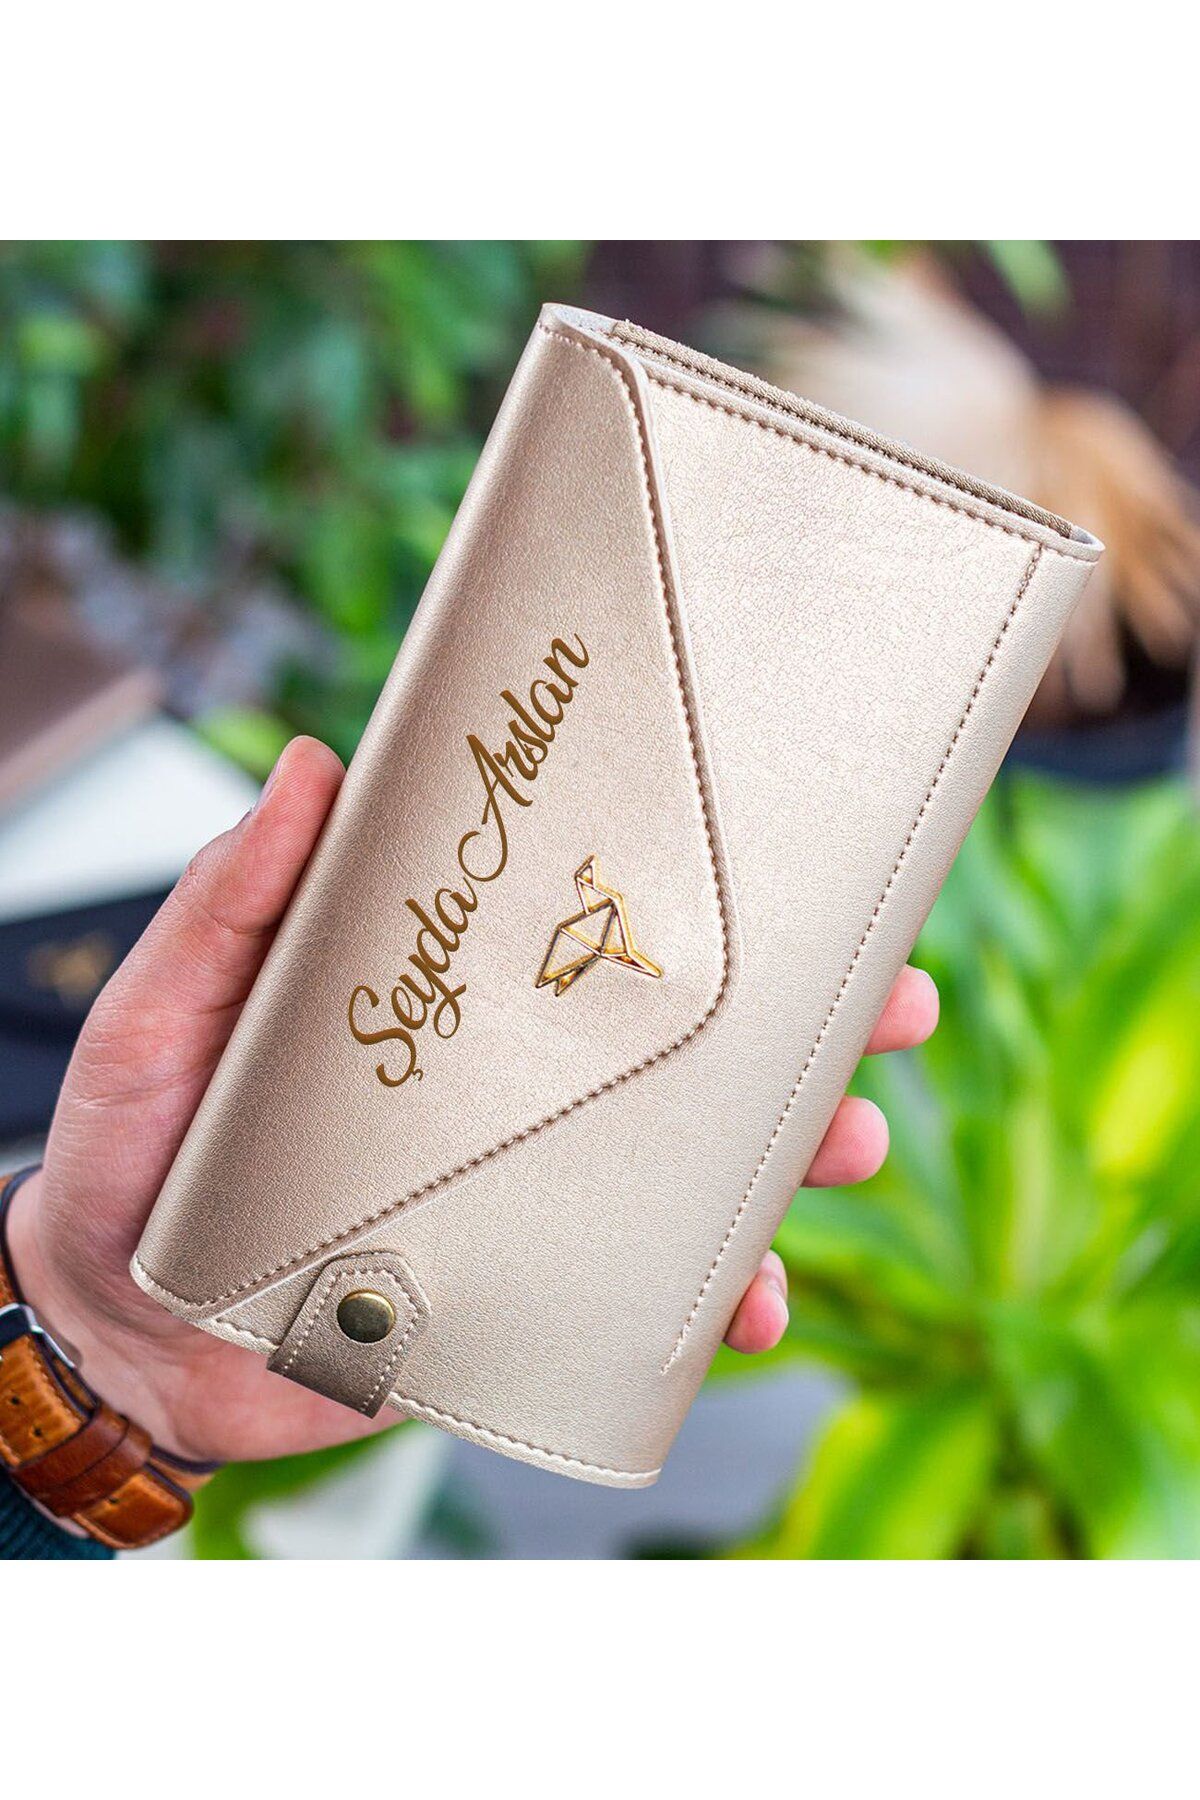 Bk Gift Kişiye Özel İsimli Telefon ve Bozuk Para Bölmeli Zarf Model Gold Kadın Cüzdanı, Sevgiliye He